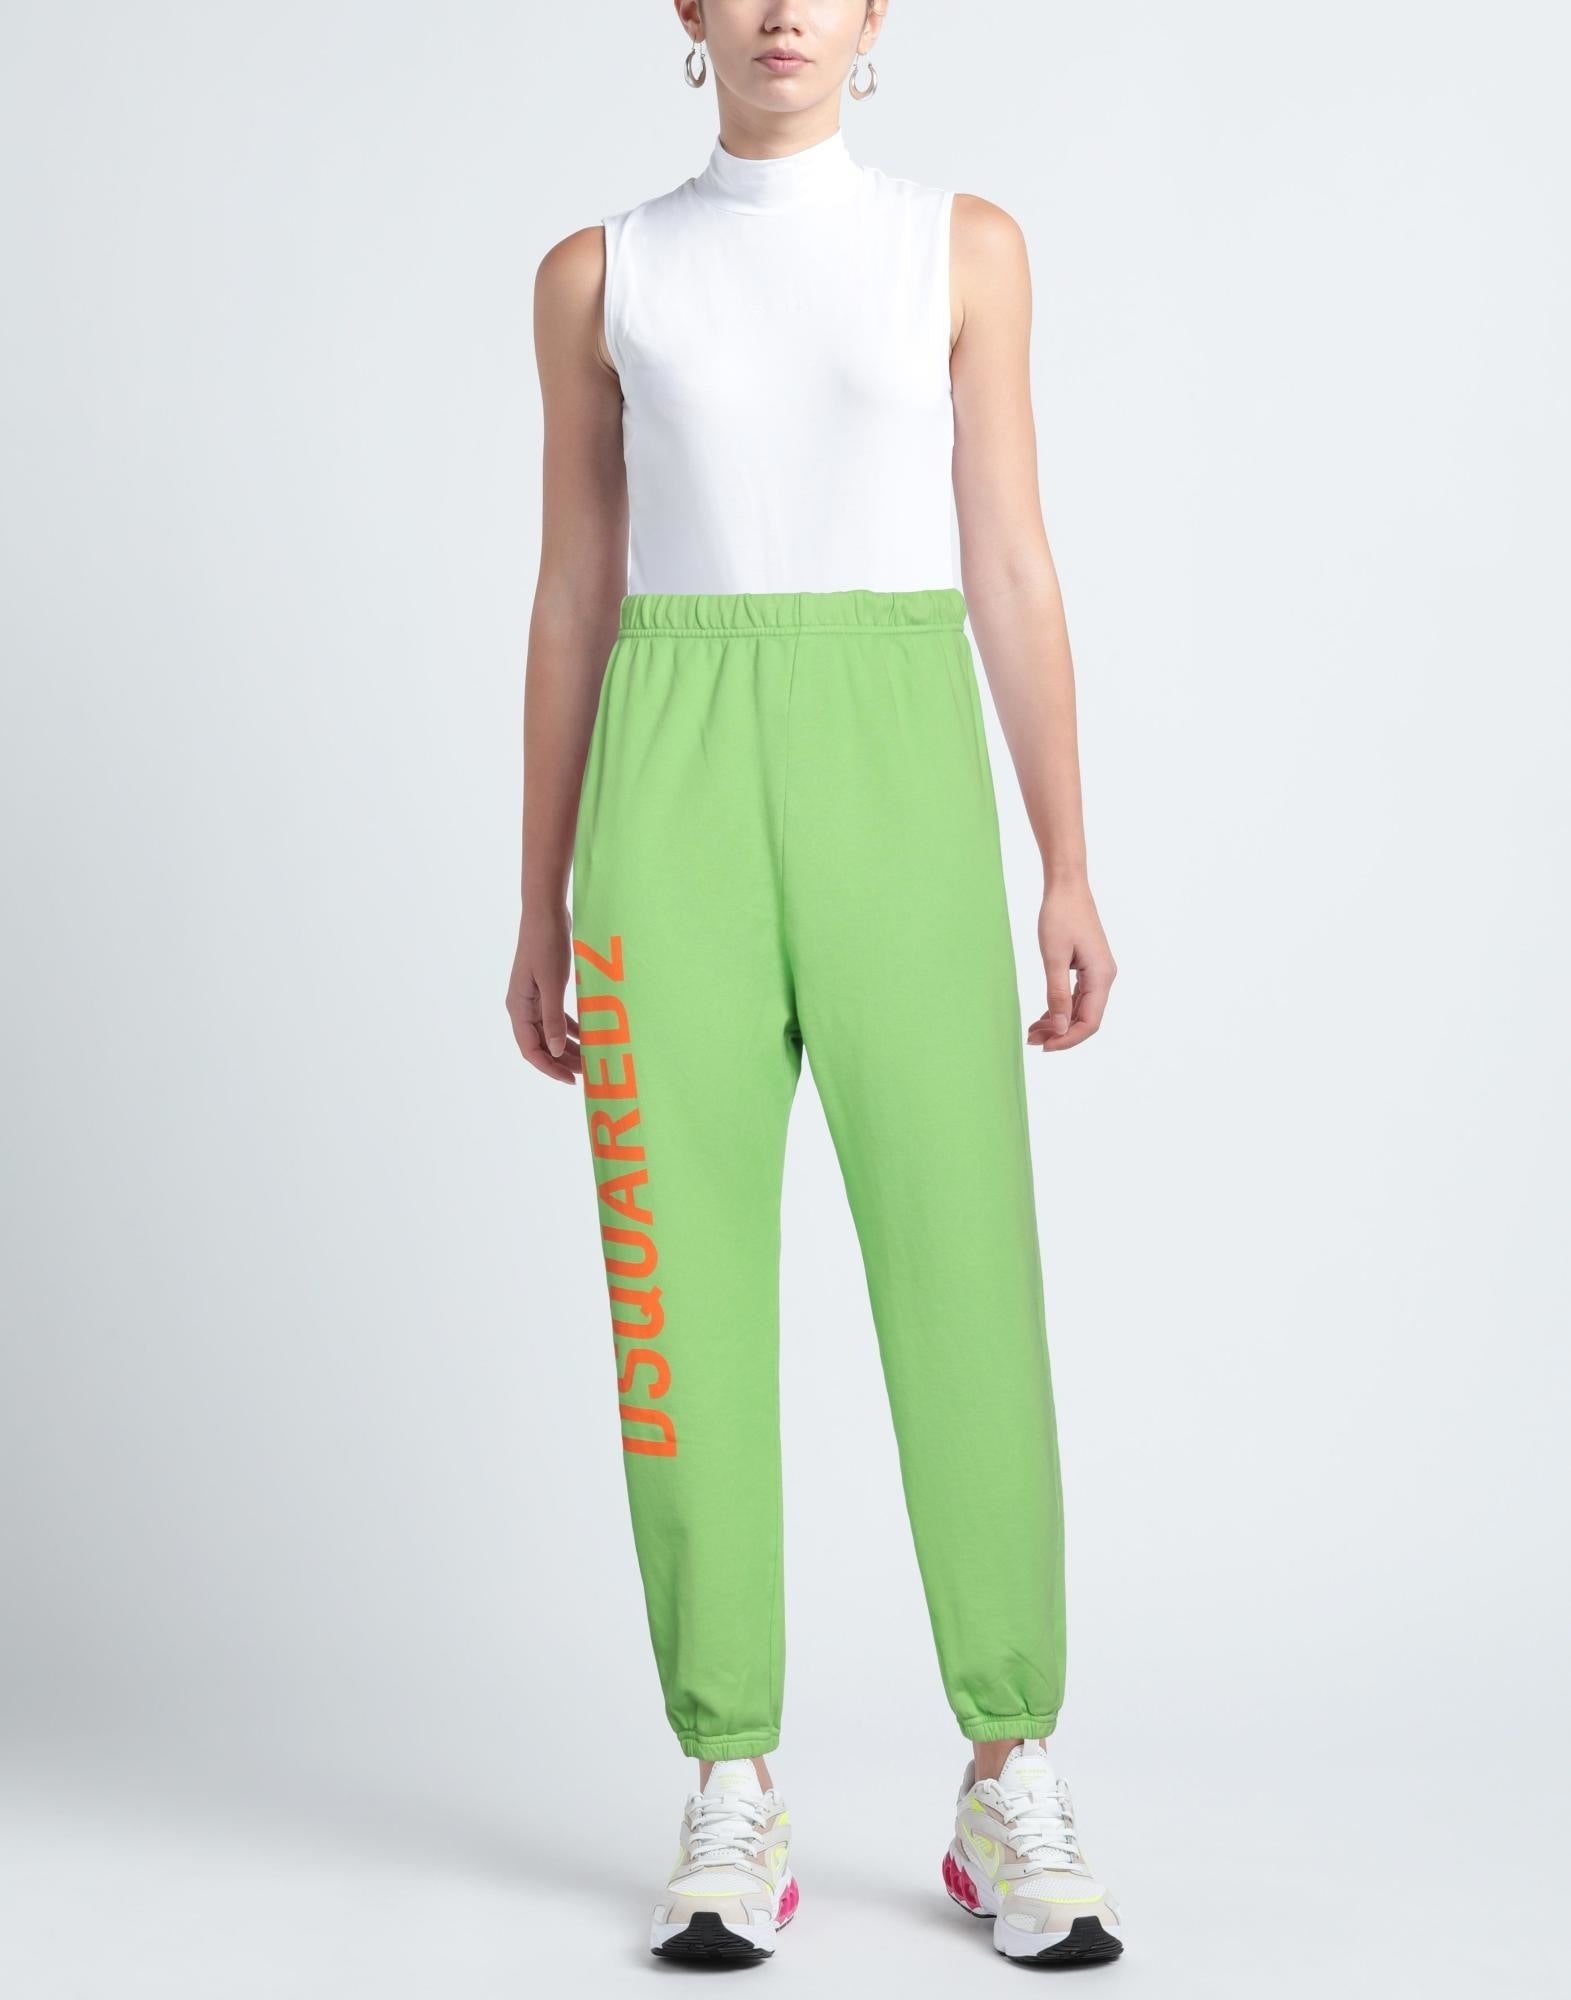 Green Women's Casual Pants - 2